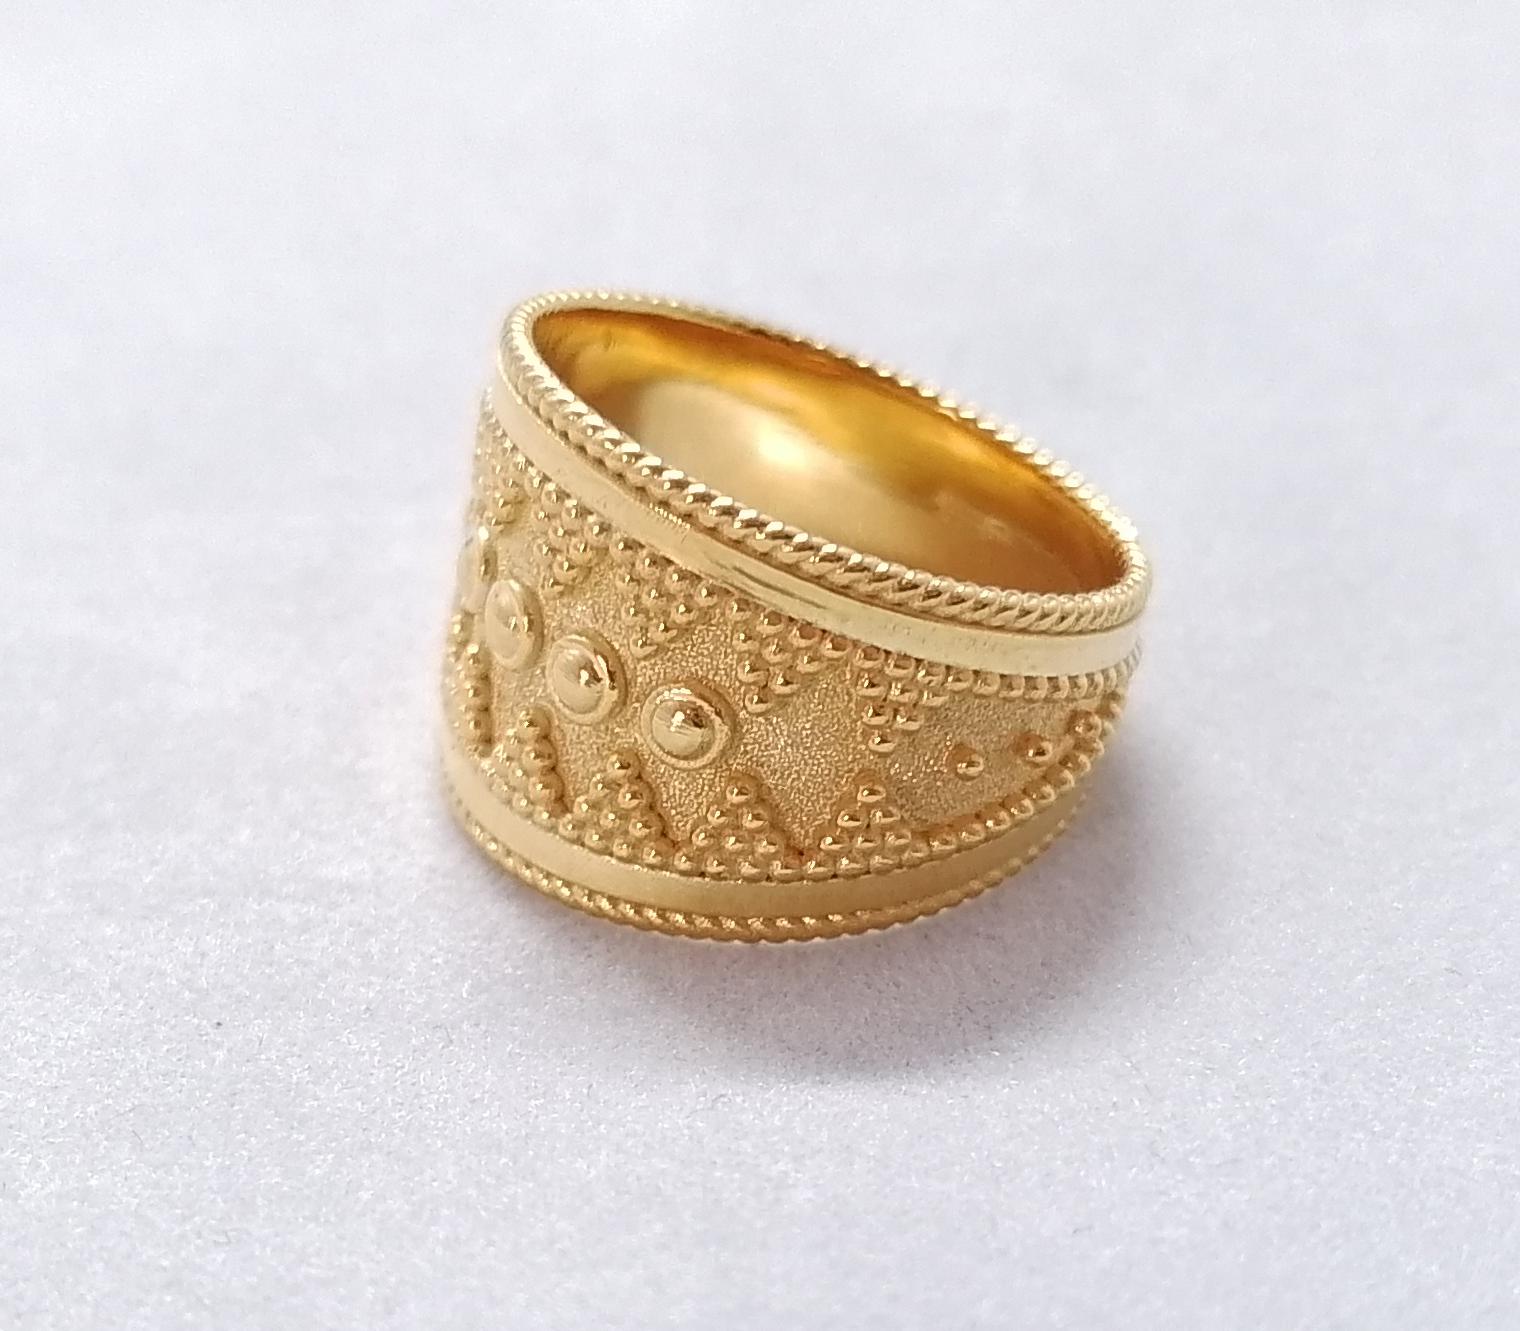 Dieser breite Designer-Ring von S.Georgios ist aus massivem 18-karätigem Gelbgold gefertigt und mikroskopisch mit handgefertigter Granulierung verziert, um ein atemberaubendes und elegantes Kunstwerk zu schaffen. Wir haben dieses wunderschöne Band